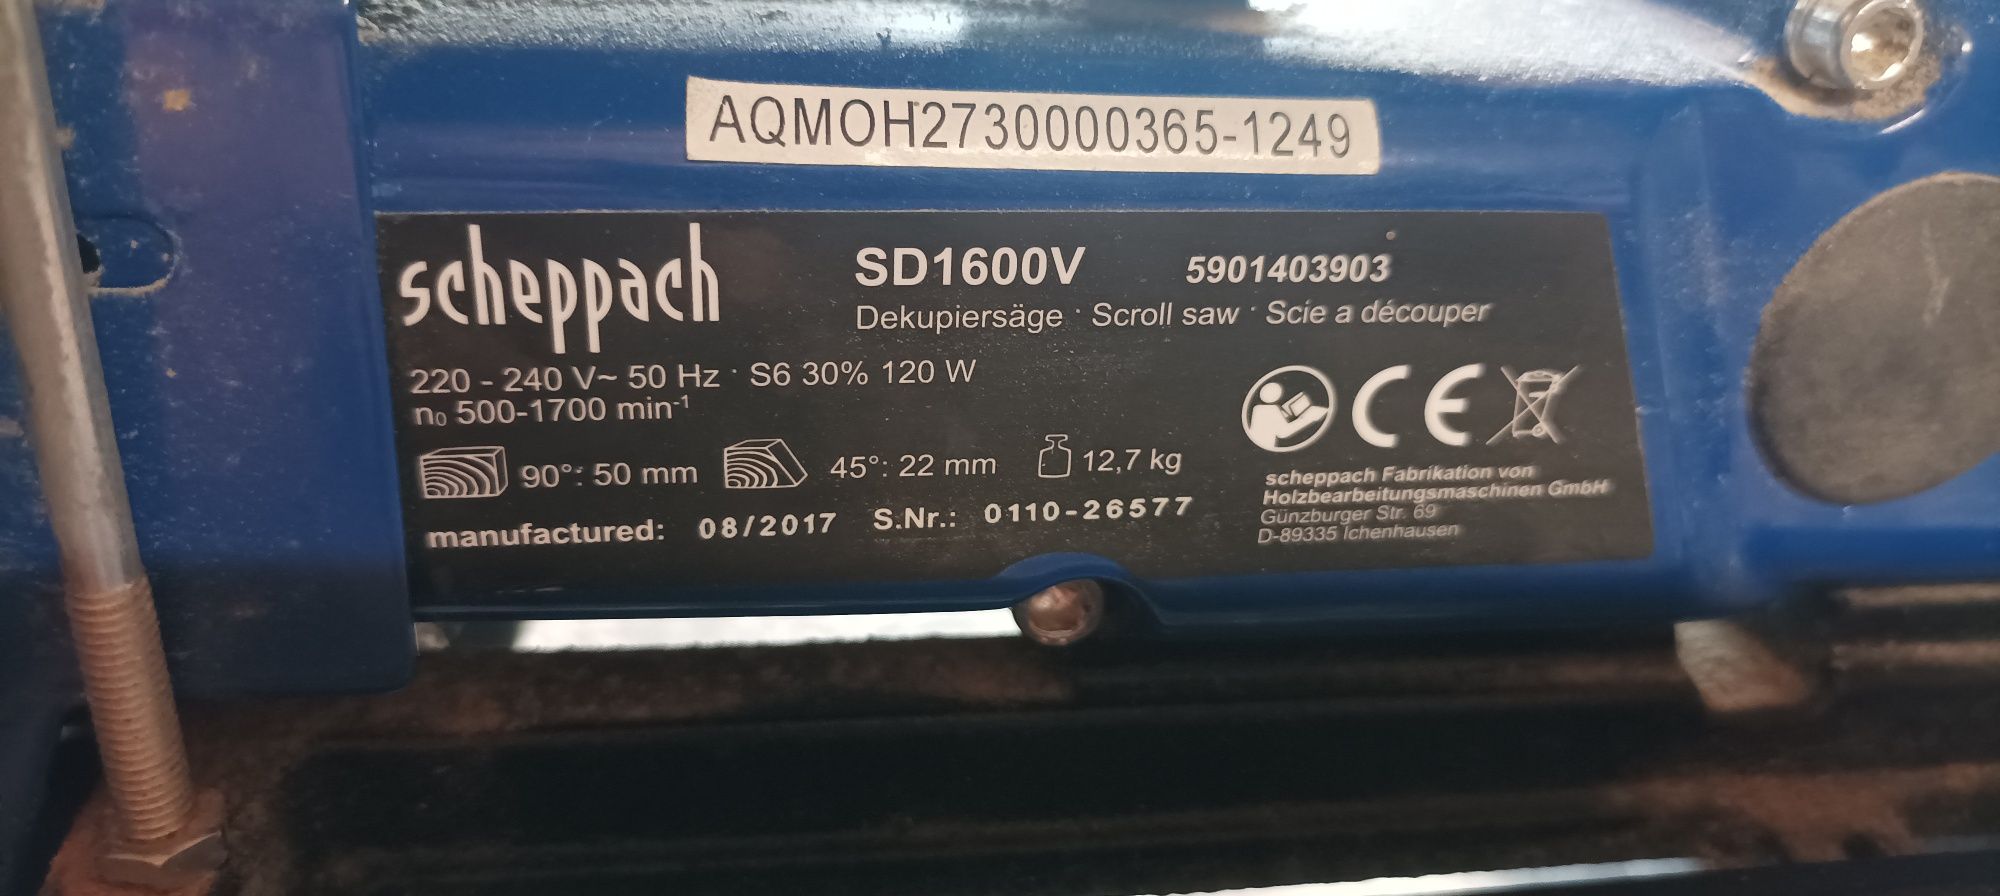 Scheppach SD1600v